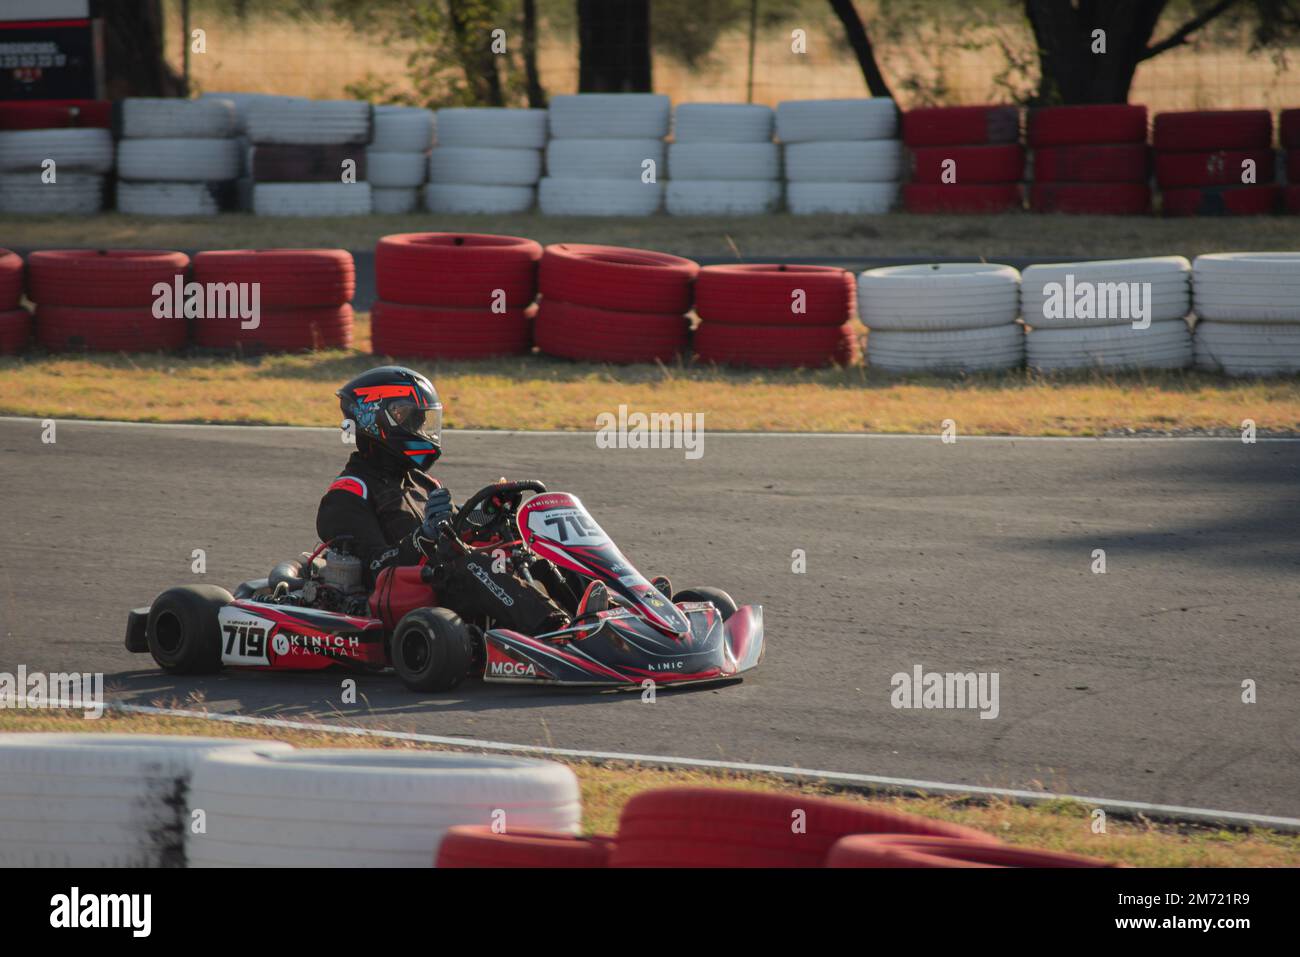 Queretaro, Queretaro, 11 18 22 ans, garçon en casque et en uniforme de course, entraîne kart sur piste de karting, sports d'adrénaline d'été Banque D'Images